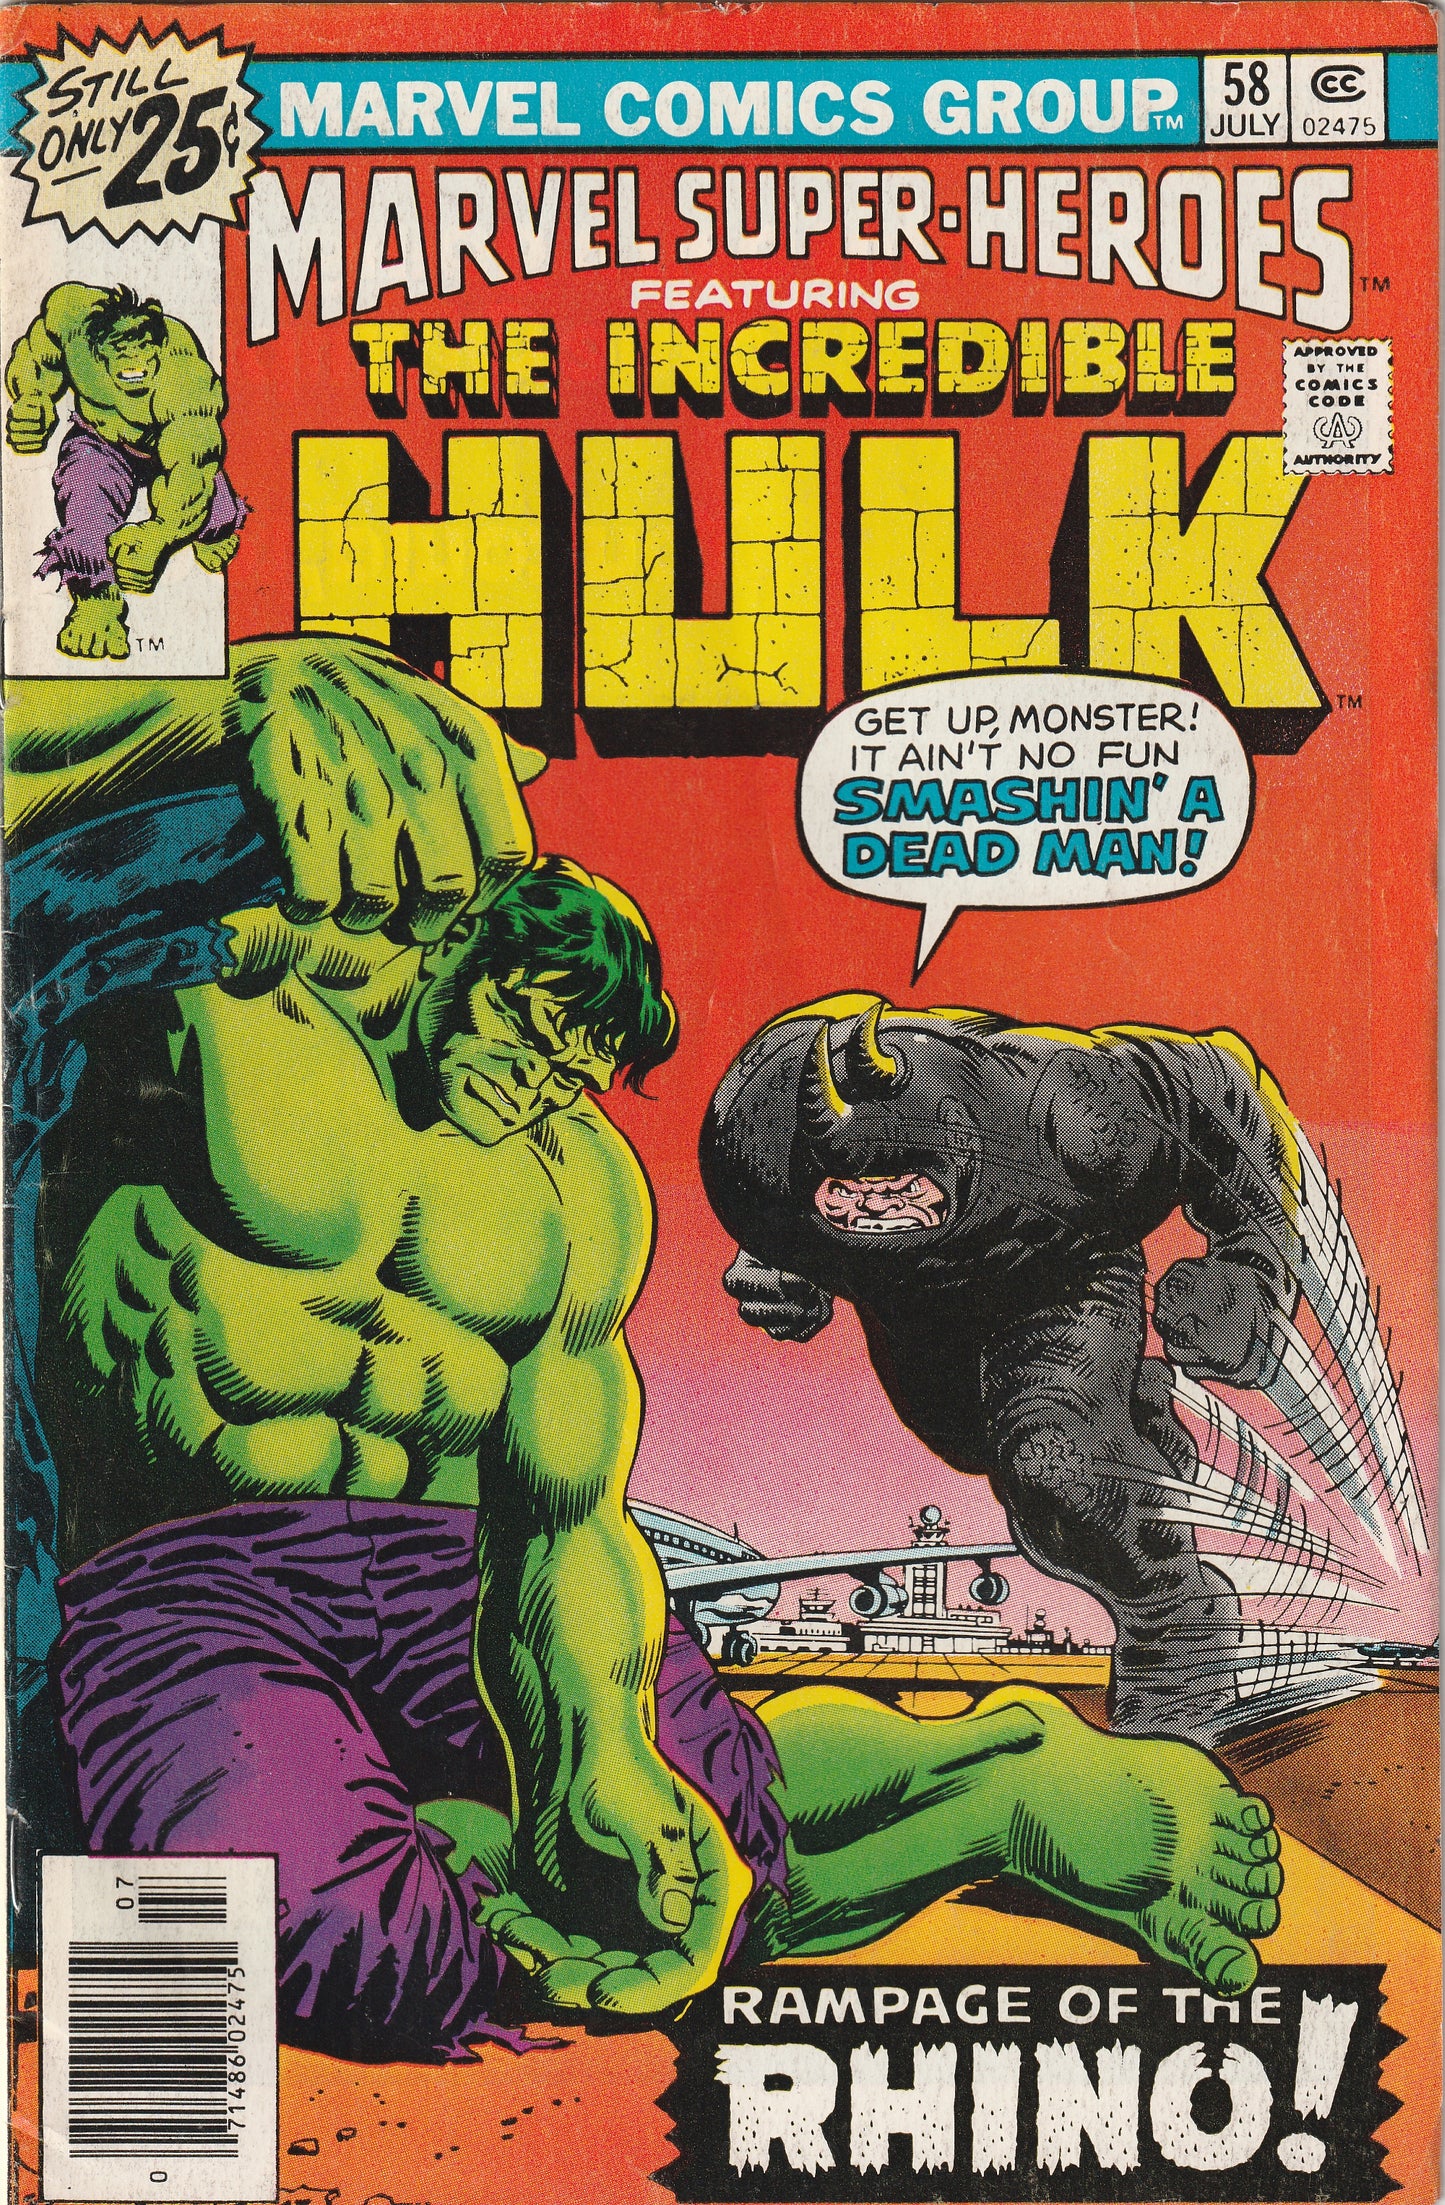 Marvel Super-Heroes #58 (1976) - Reprints Incredible Hulk 104